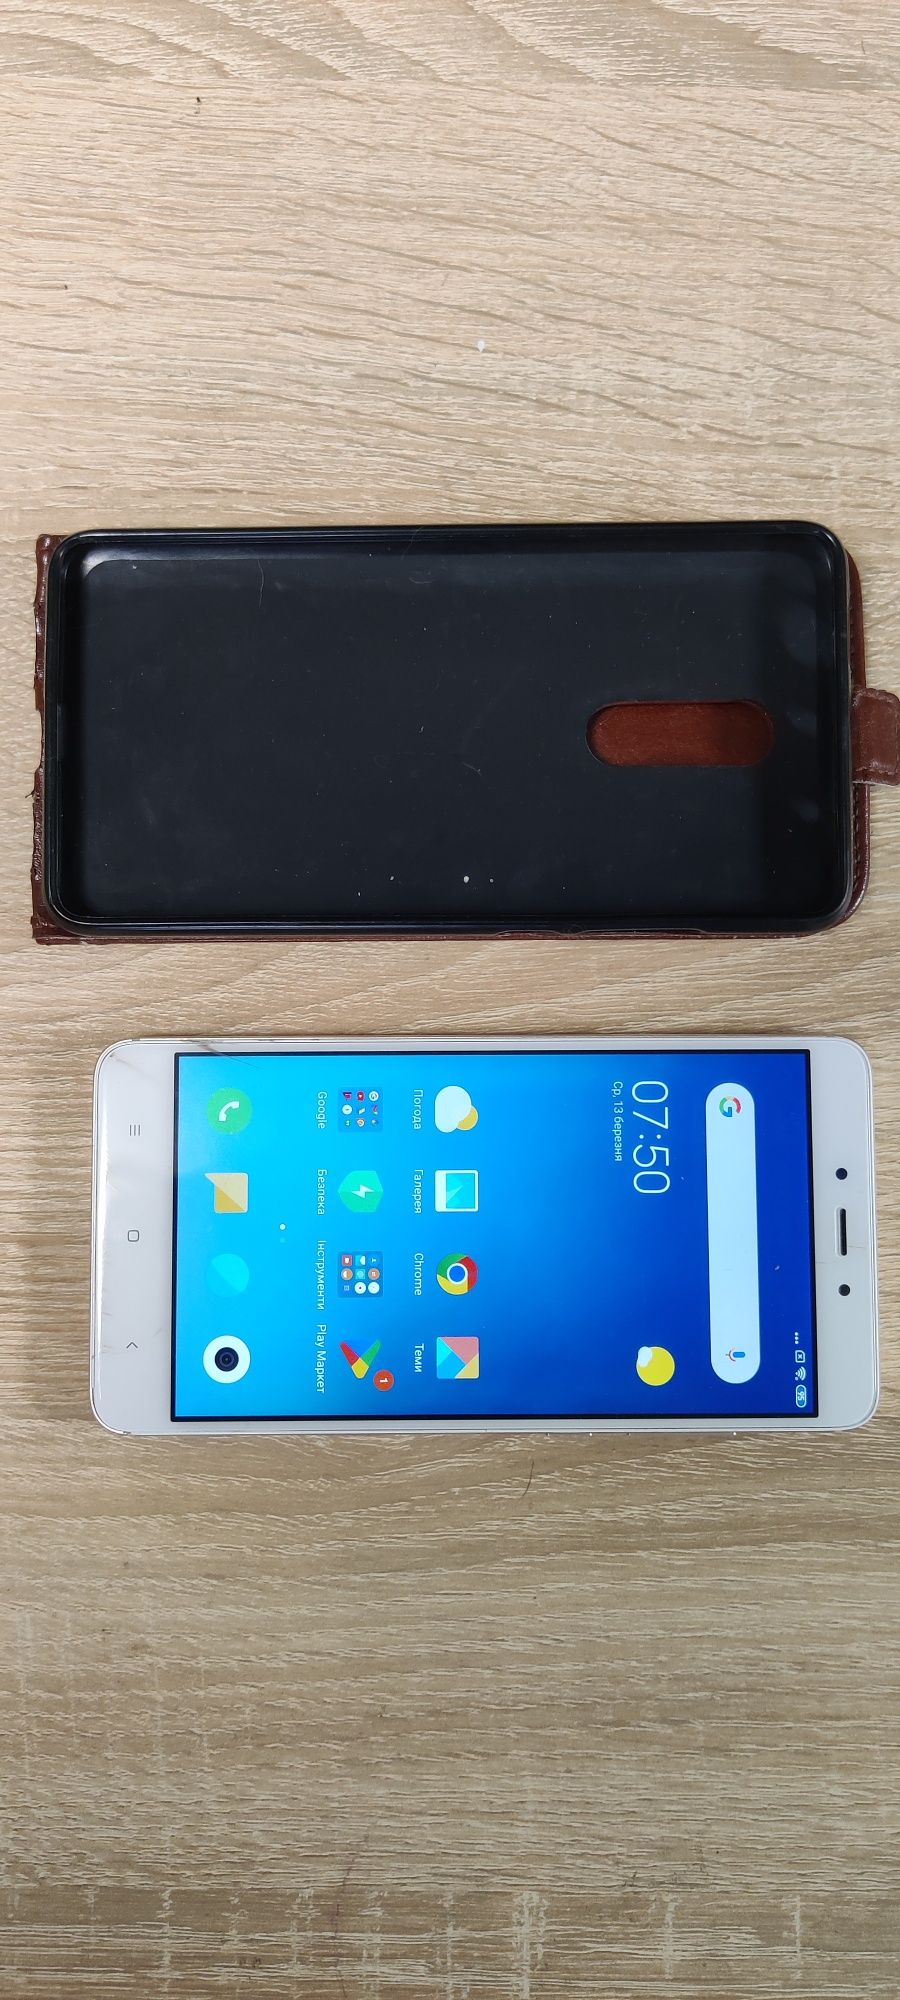 Телефон Redmi Note 4 в рабочем состоянии